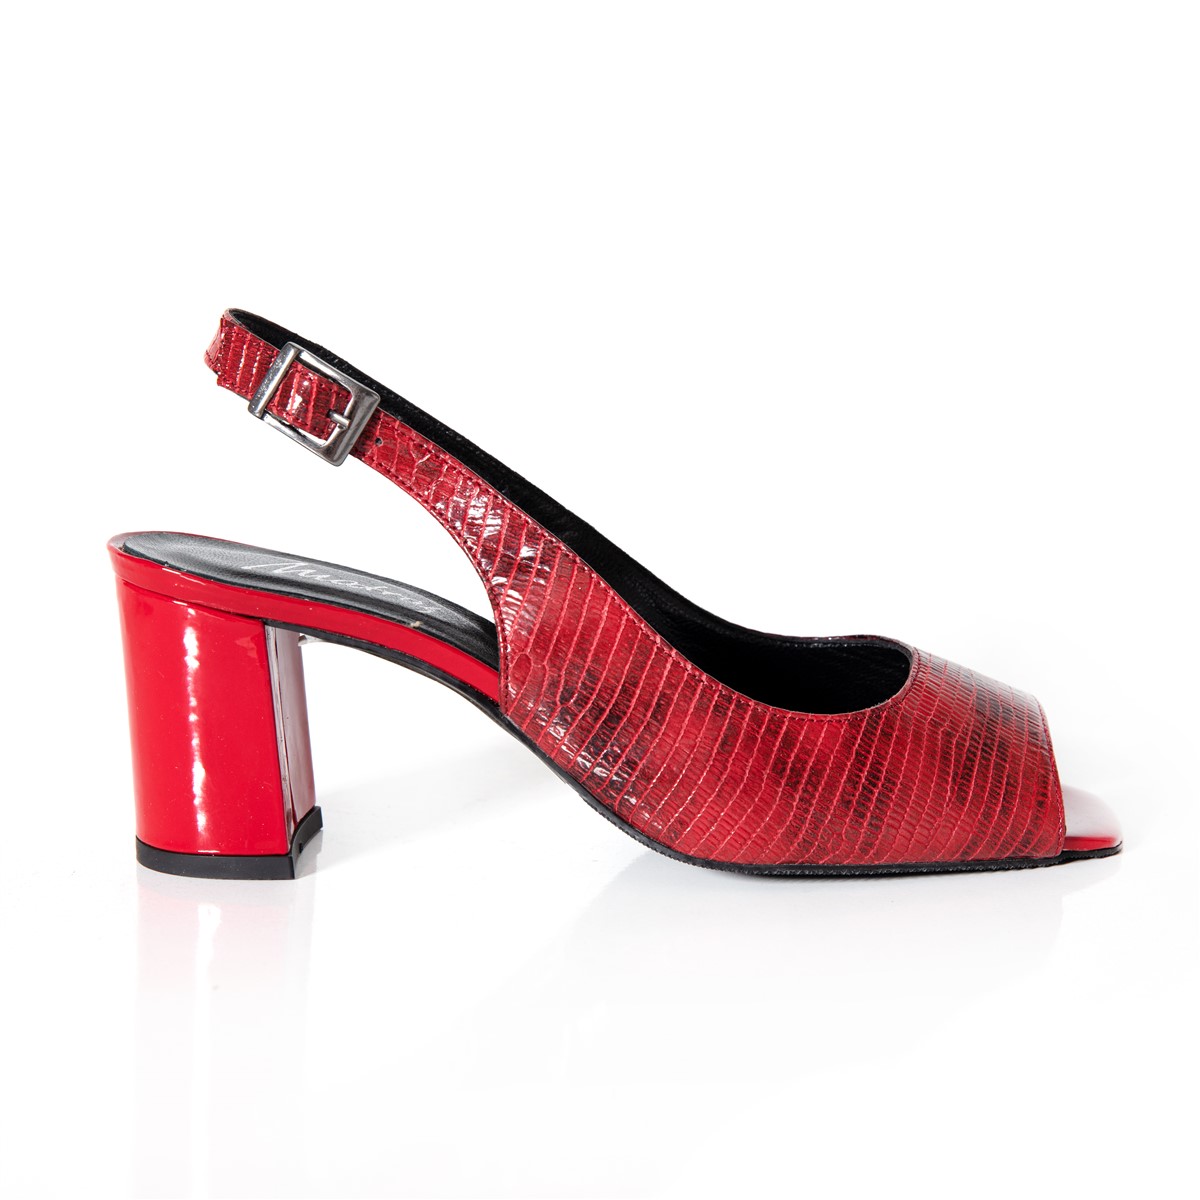 Matraş Kadın Yılan Baskı Topuklu Kadın Ayakkabı  Kırmızı 9FF-1033